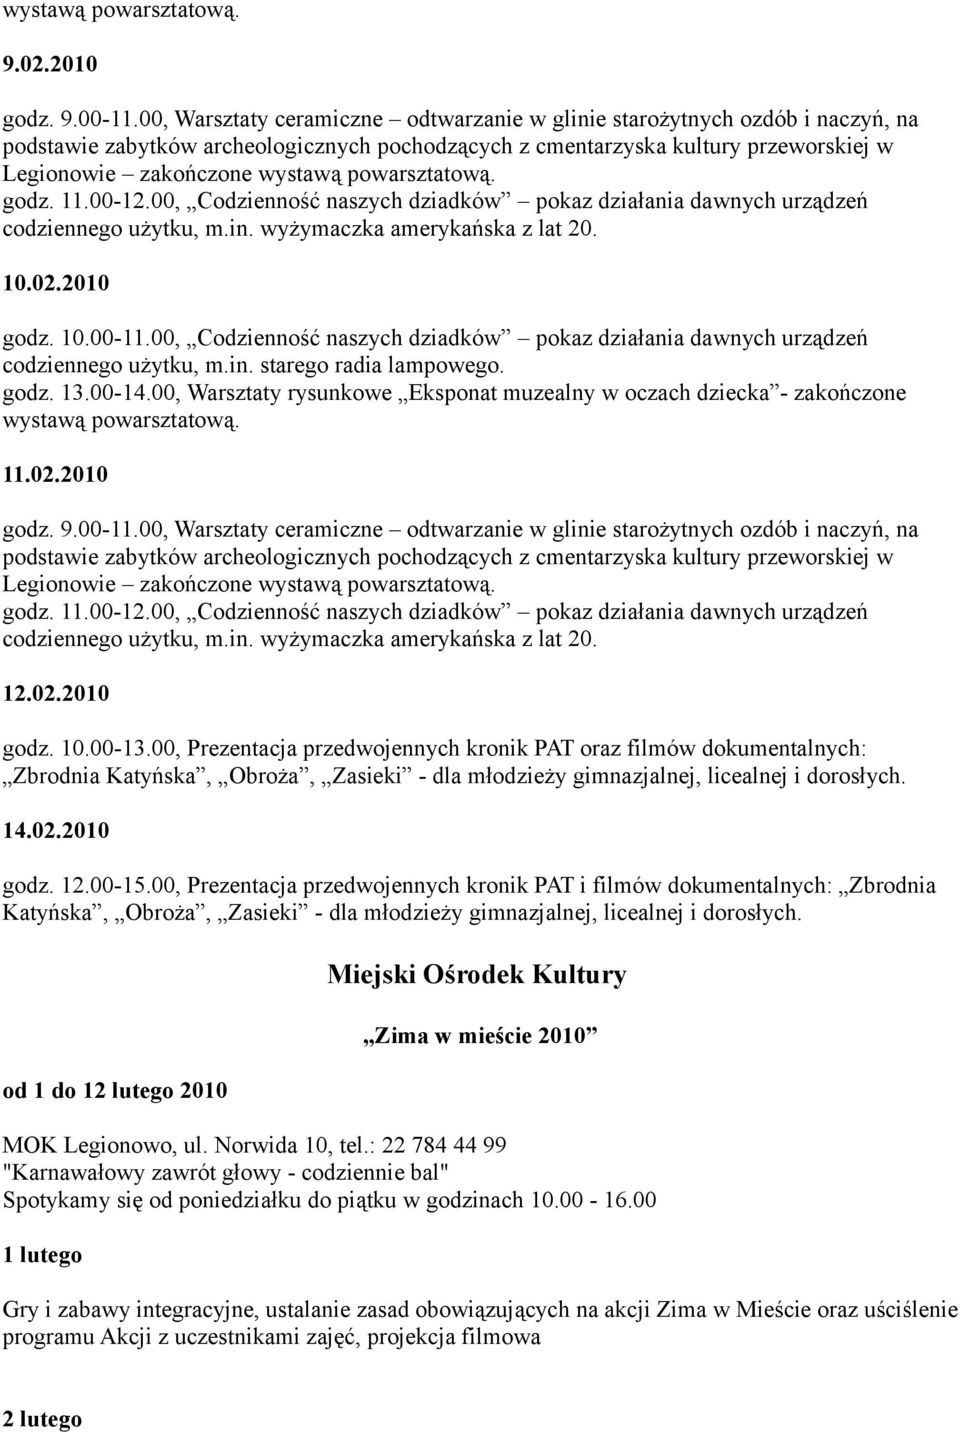 00, Prezentacja przedwojennych kronik PAT i filmów dokumentalnych: Zbrodnia Katyńska, Obroża, Zasieki - dla młodzieży gimnazjalnej, licealnej i dorosłych.